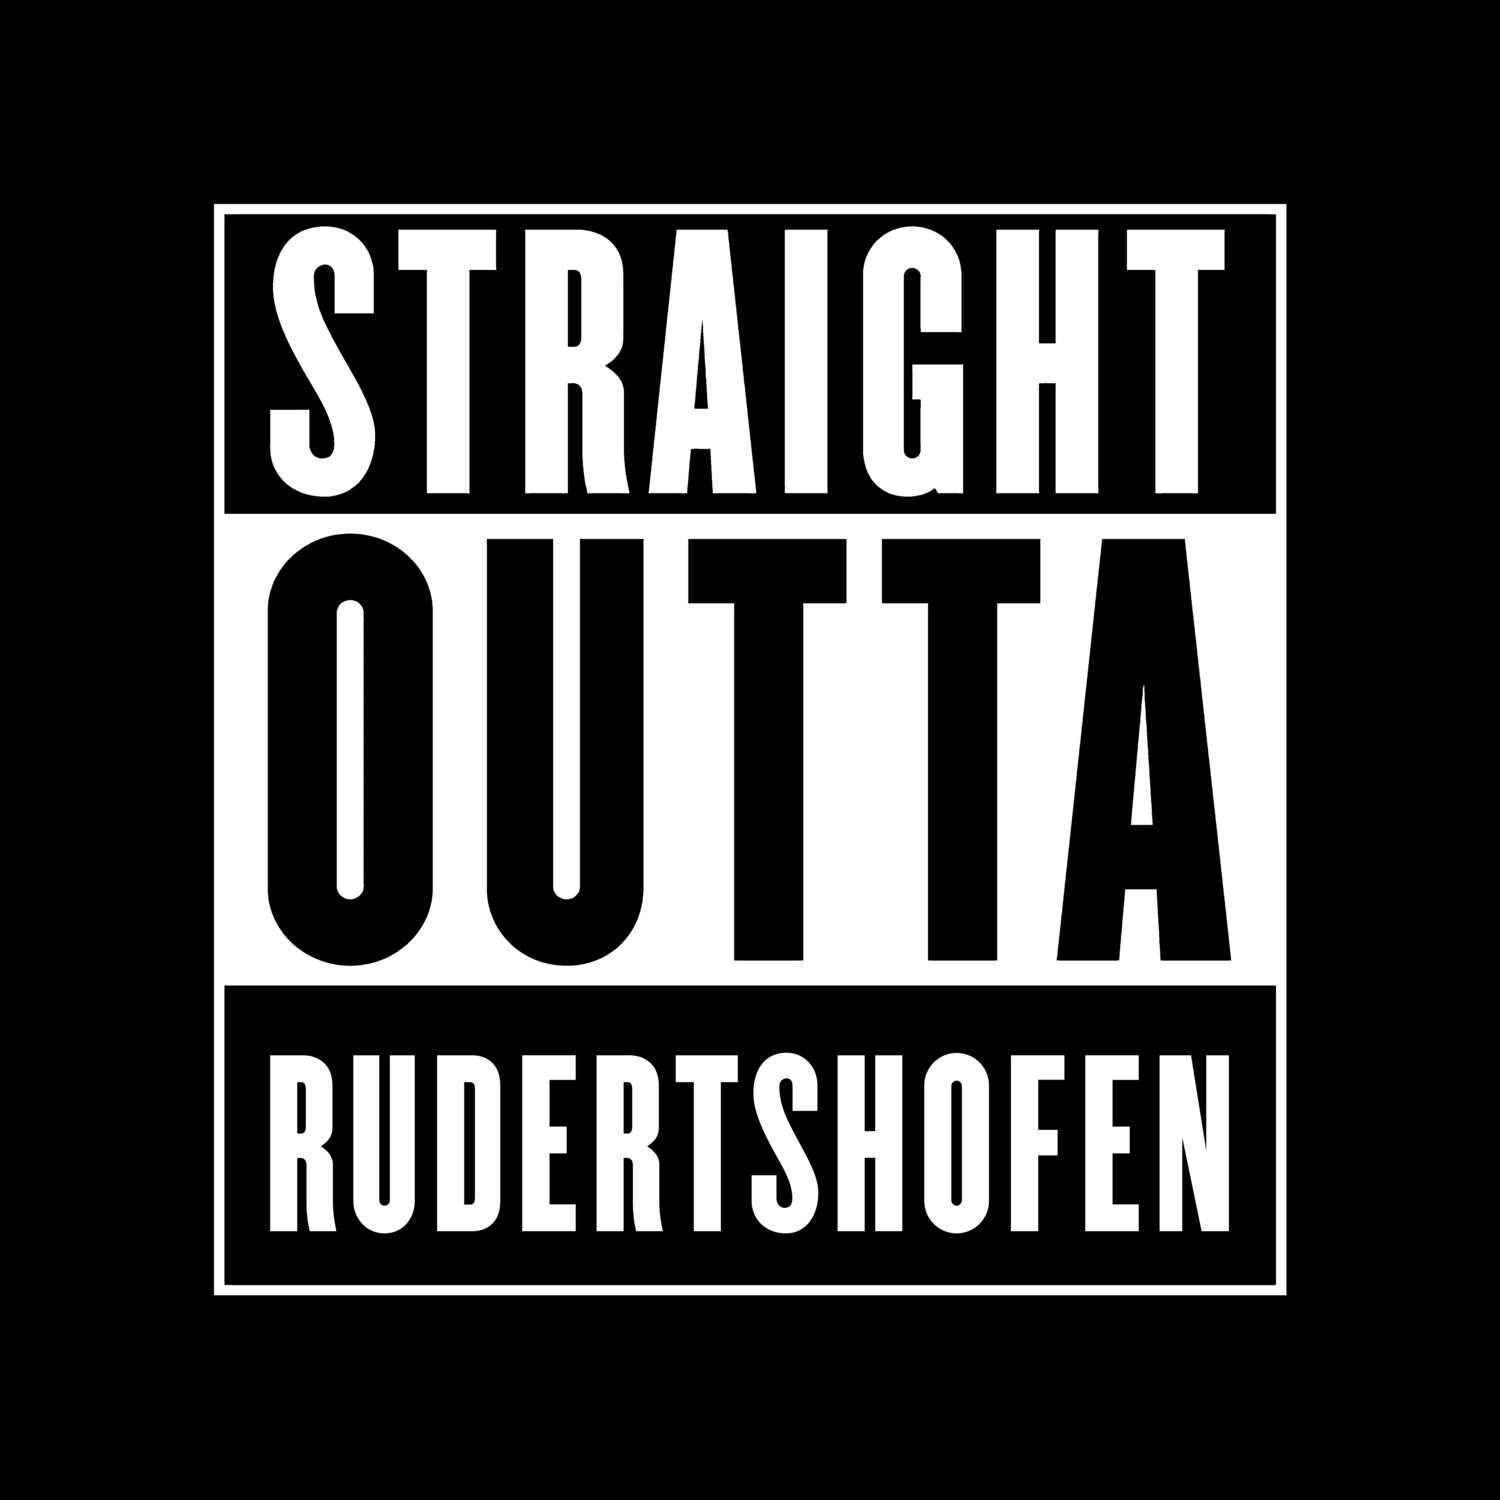 Rudertshofen T-Shirt »Straight Outta«